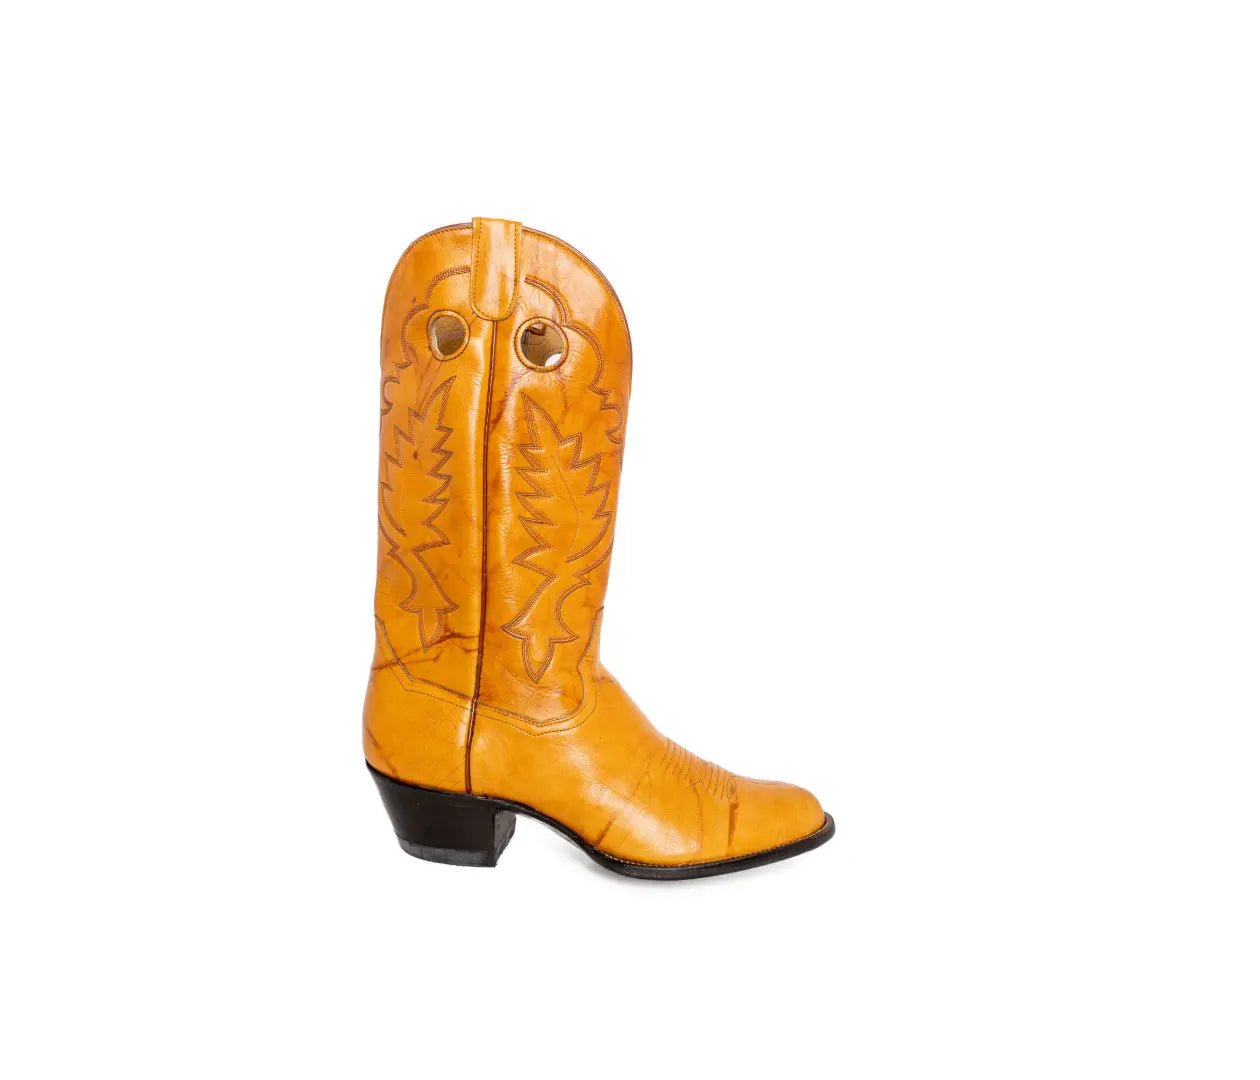 Panhandle Slim Men's Cowboy Boots 13" Cowhide R-toe 22153 - Panhandle Slim